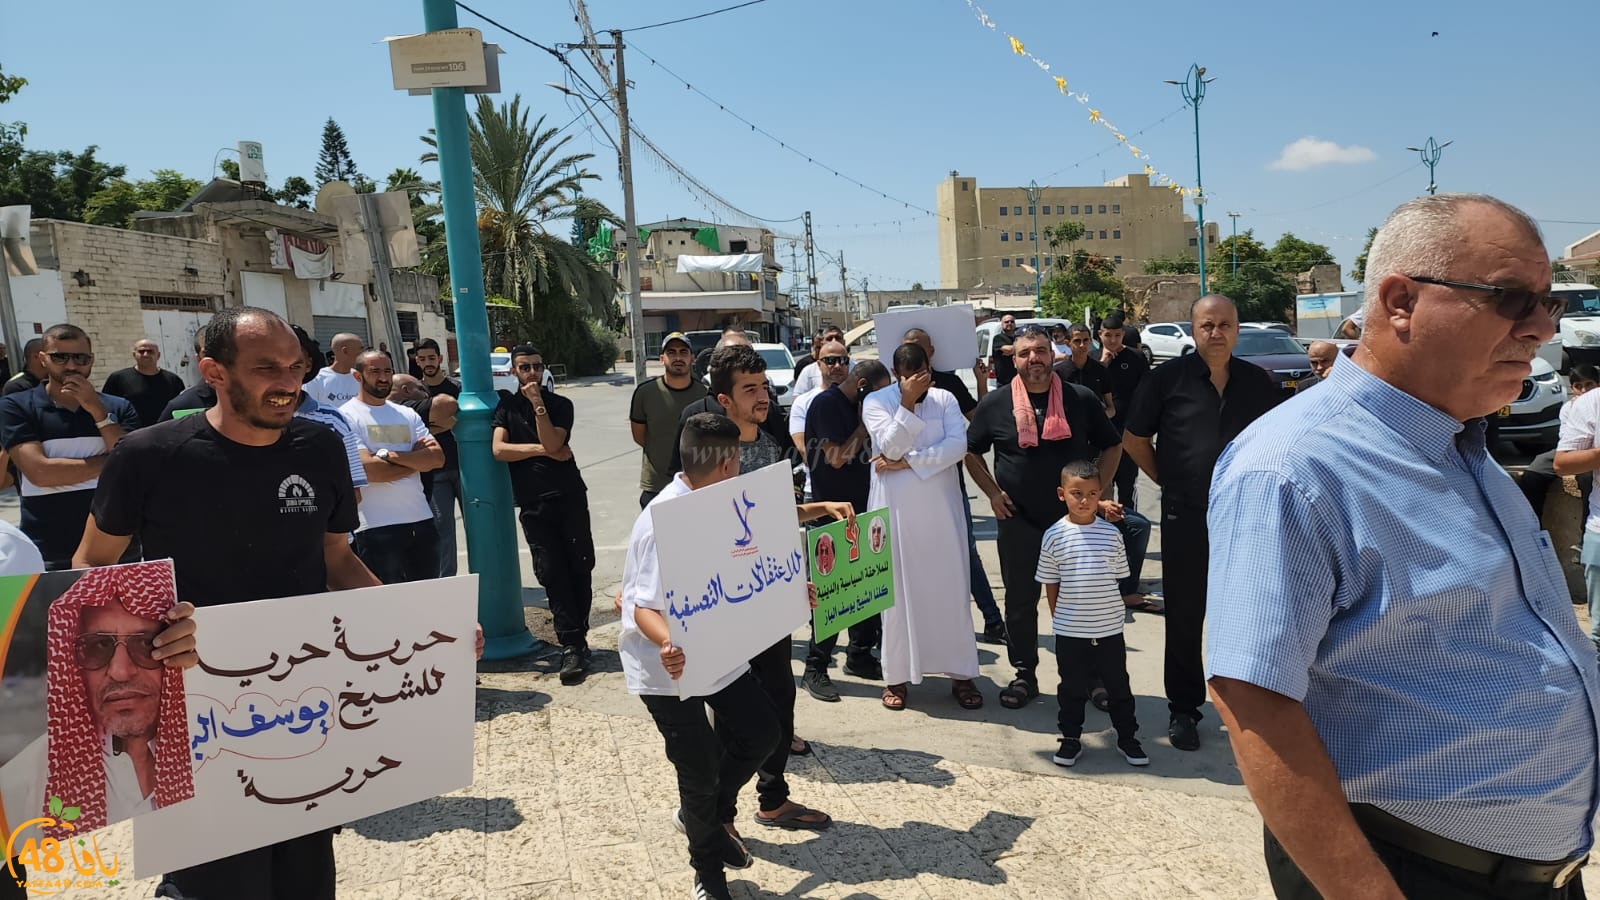  اللد: وقفة احتجاجية على استمرار اعتقال الشيخ يوسف الباز